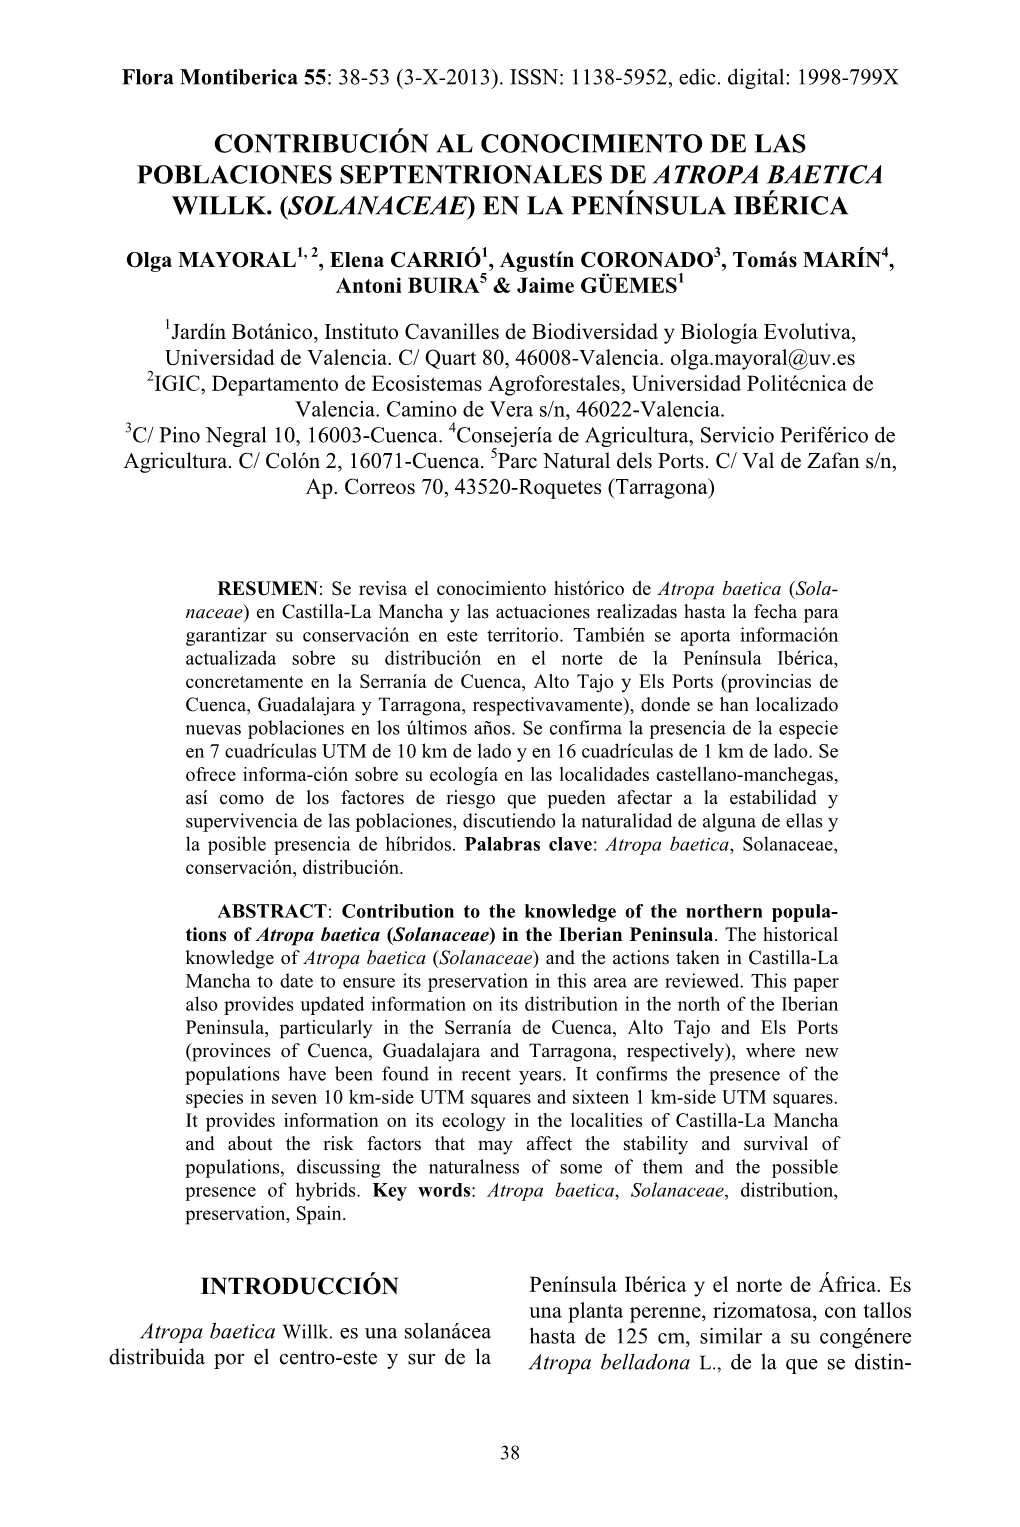 Contribución Al Conocimiento De Las Poblaciones Septentrionales De Atropa Baetica Willk. (Solanaceae) En La Península Ibérica